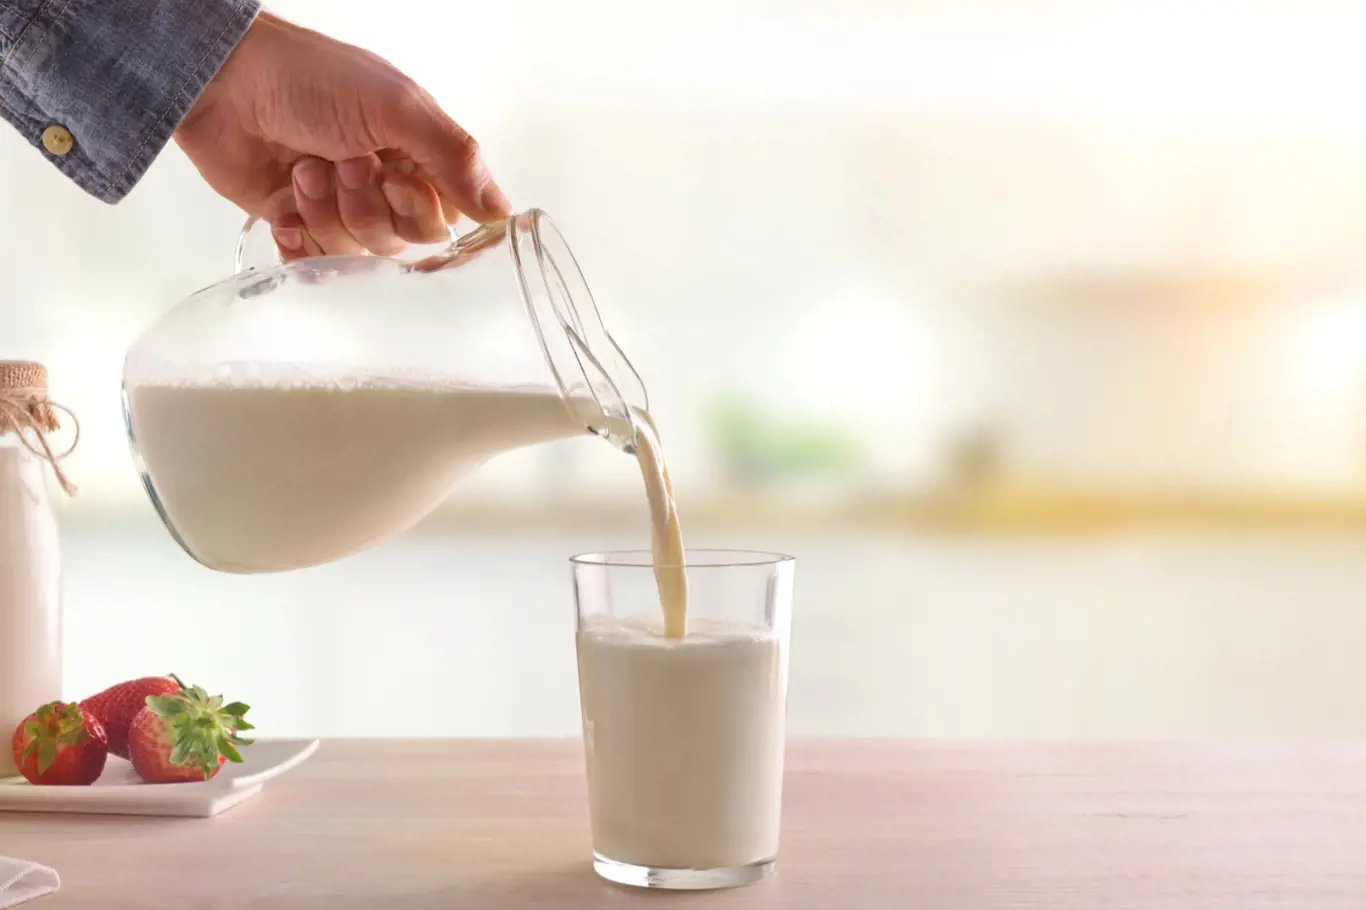 Váháte, zda dávat vašemu dítěti mléko? Záleží především na zdravotním stavu a chutích vašeho dítěte.